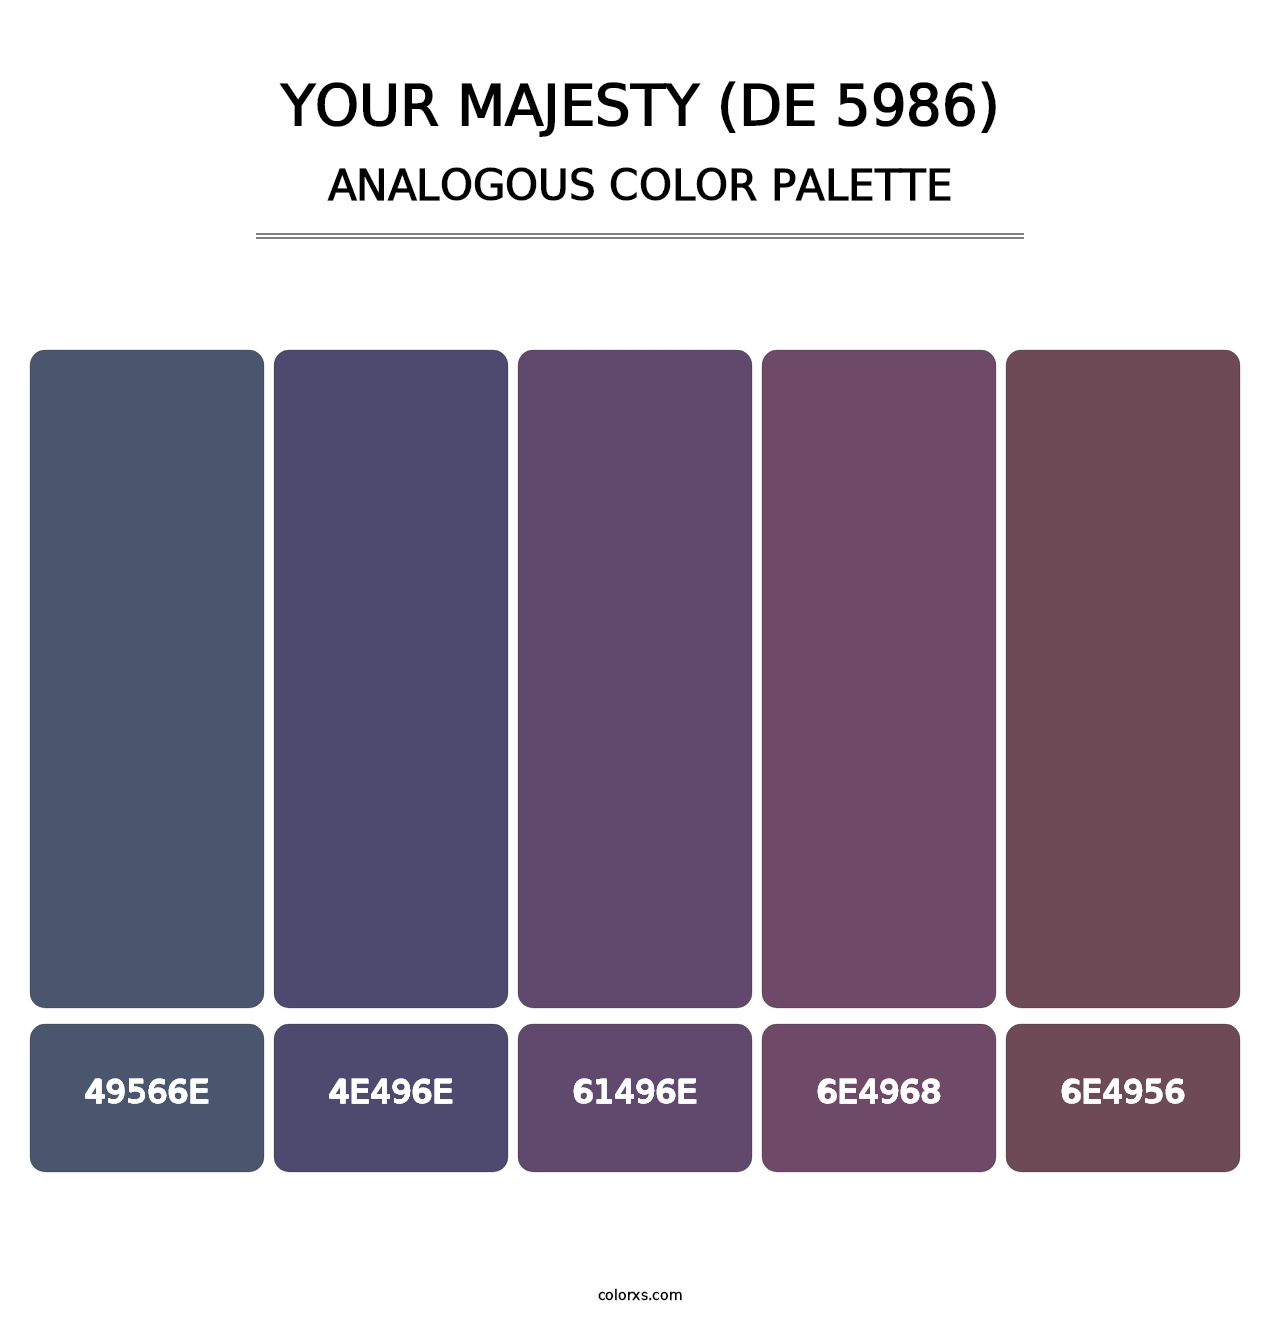 Your Majesty (DE 5986) - Analogous Color Palette